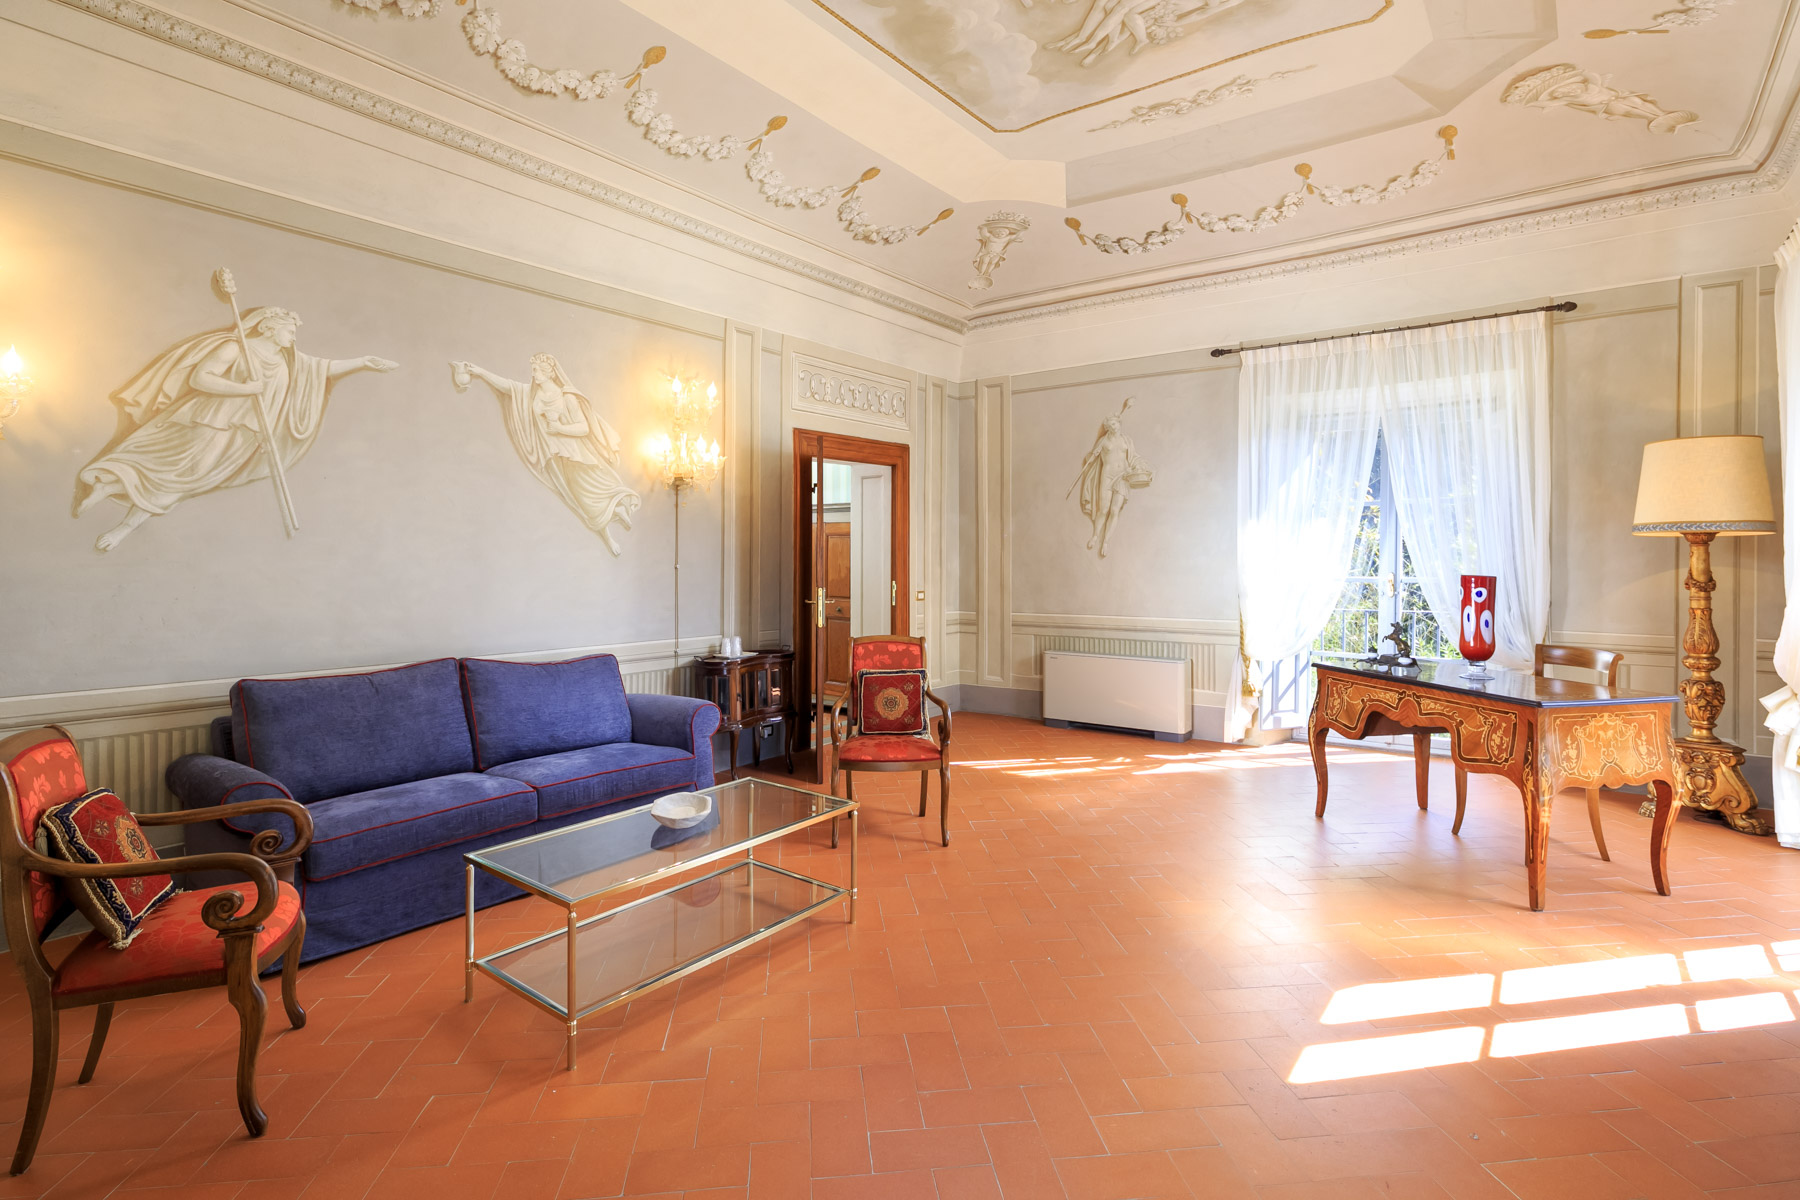 Villa in Vendita a San Giuliano Terme: 5 locali, 2755 mq - Foto 10